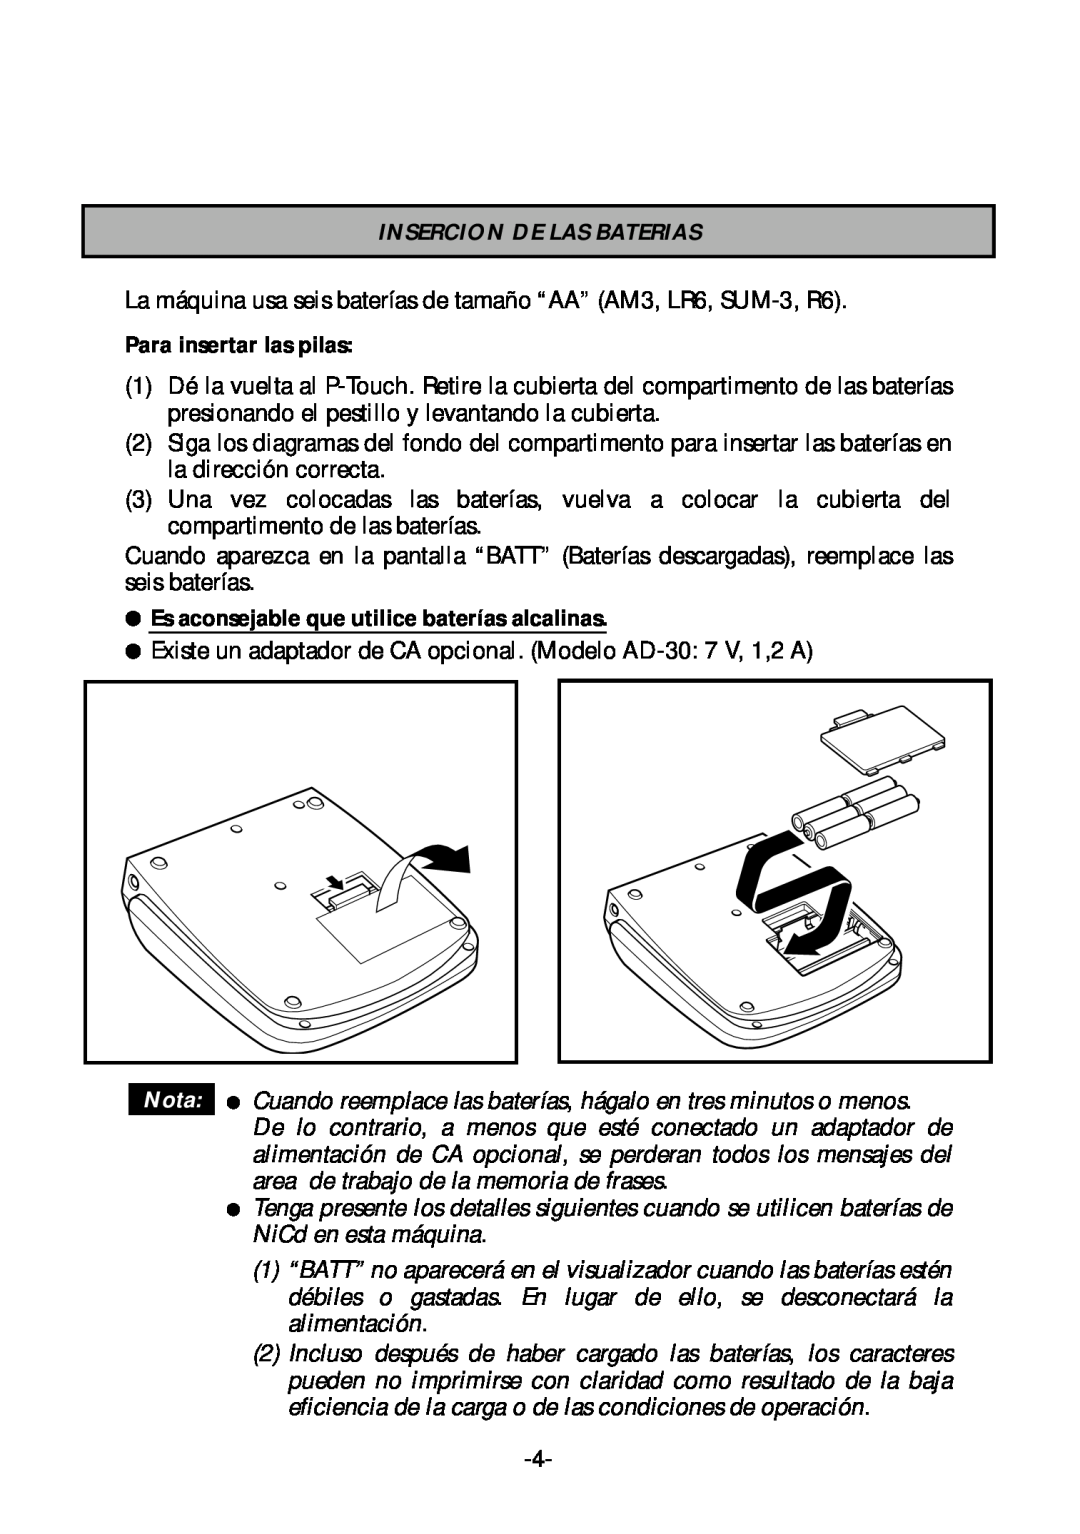 Brother PT-1700 Insercion De Las Baterias, Para insertar las pilas, Es aconsejable que utilice baterías alcalinas, Nota 